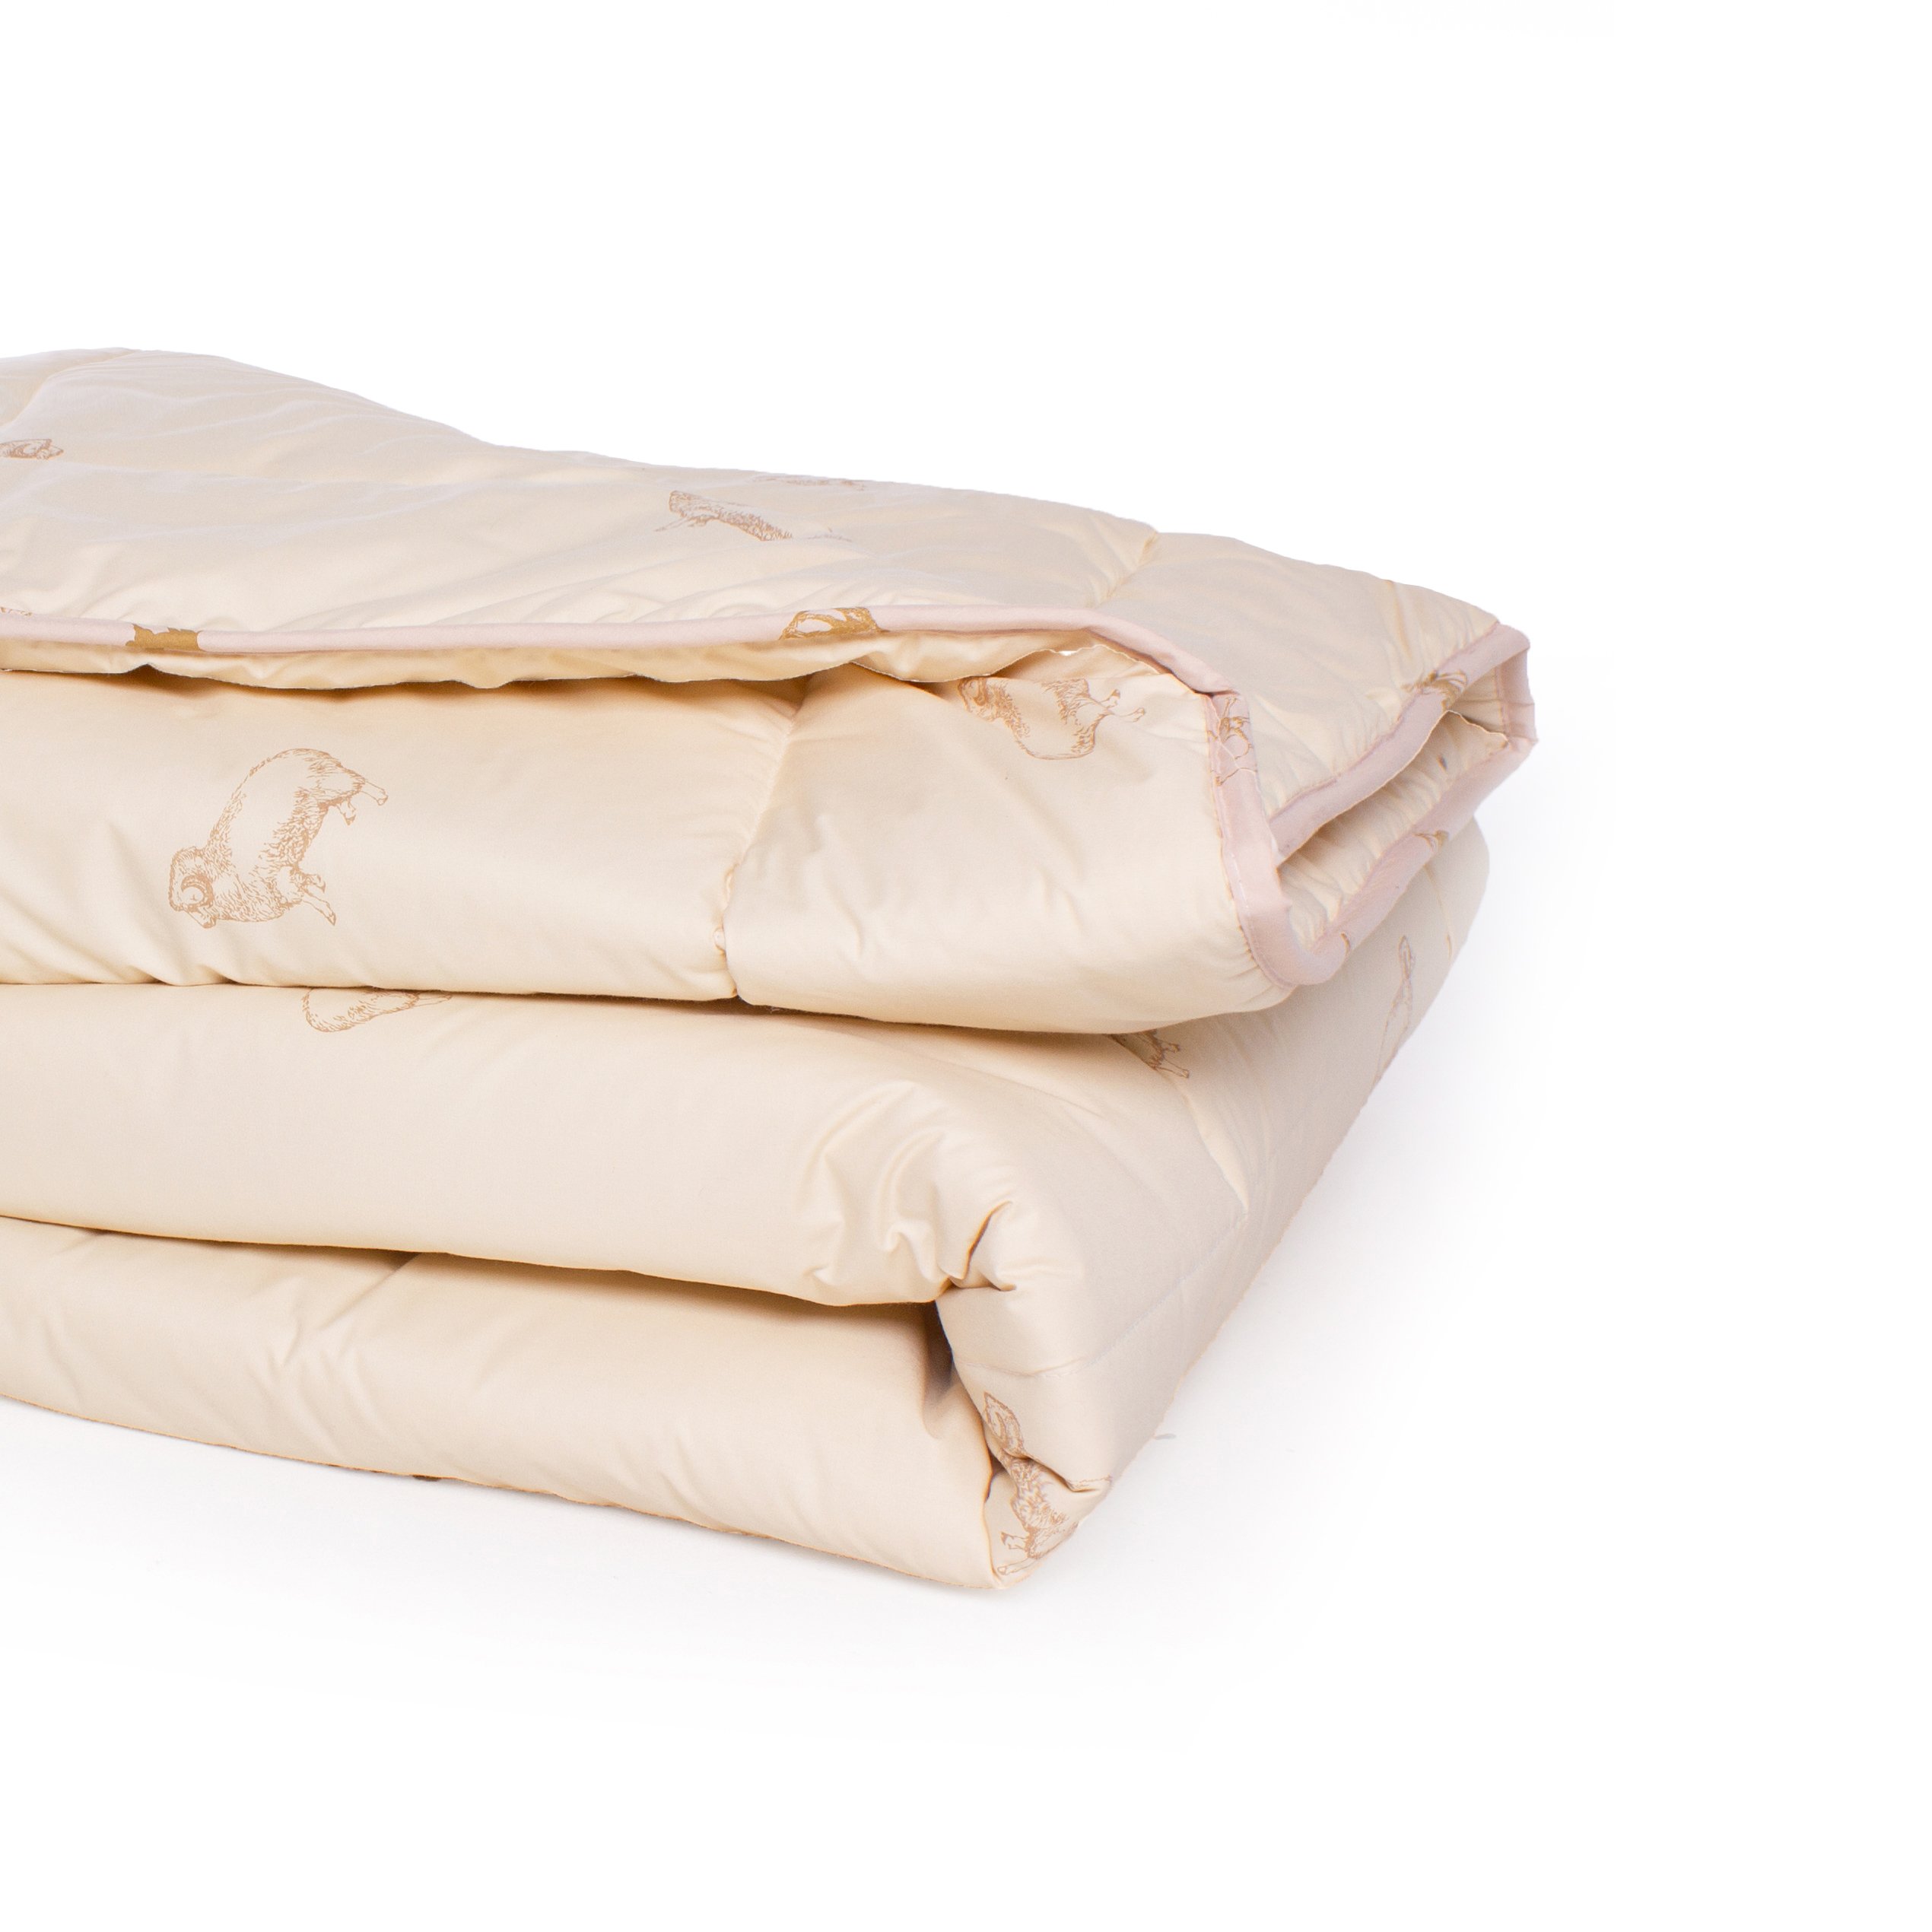 Одеяло шерстяное MirSon Gold Camel №024, зимнее, 140x205 см, кремовое - фото 3